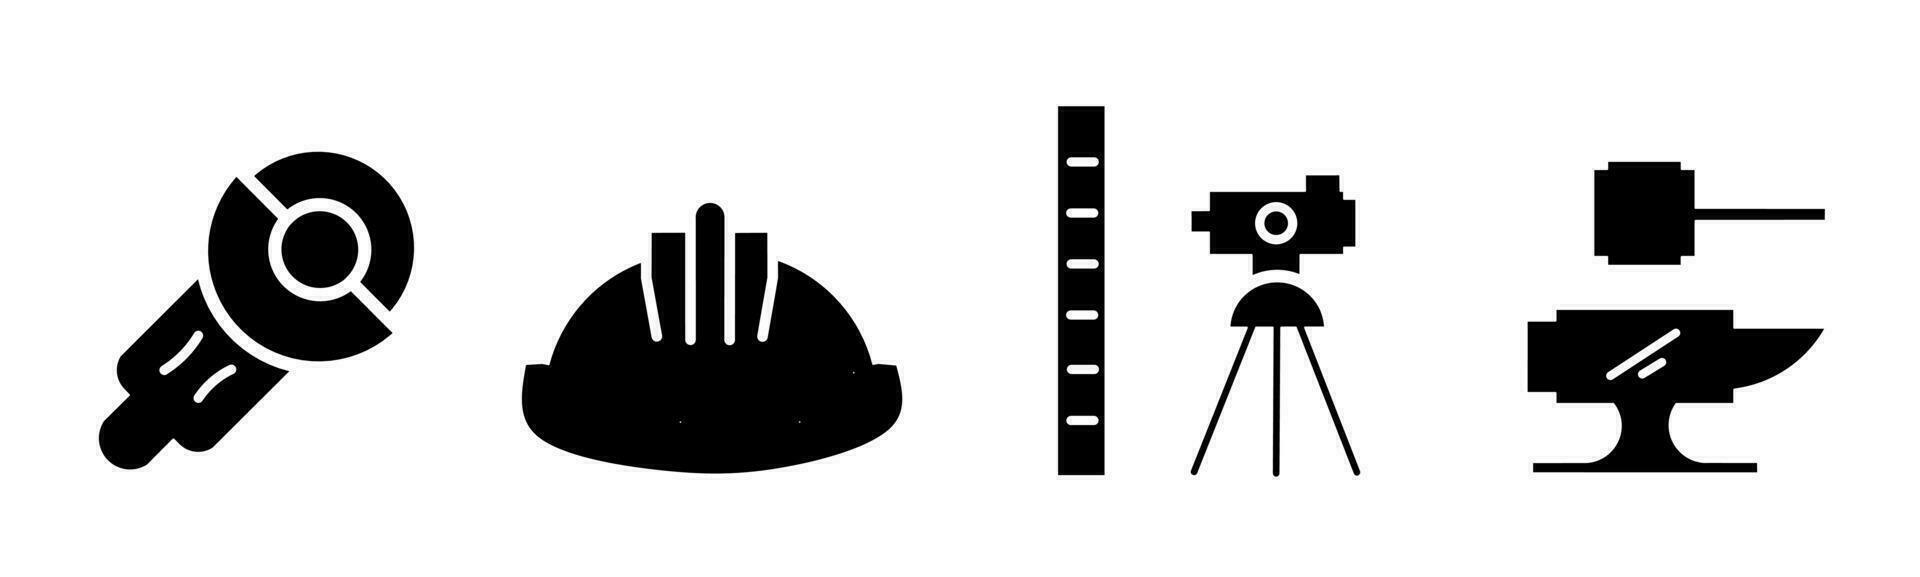 Construction equipment icon collection. An illustration of a black construction equipement icon. Stock vector. vector